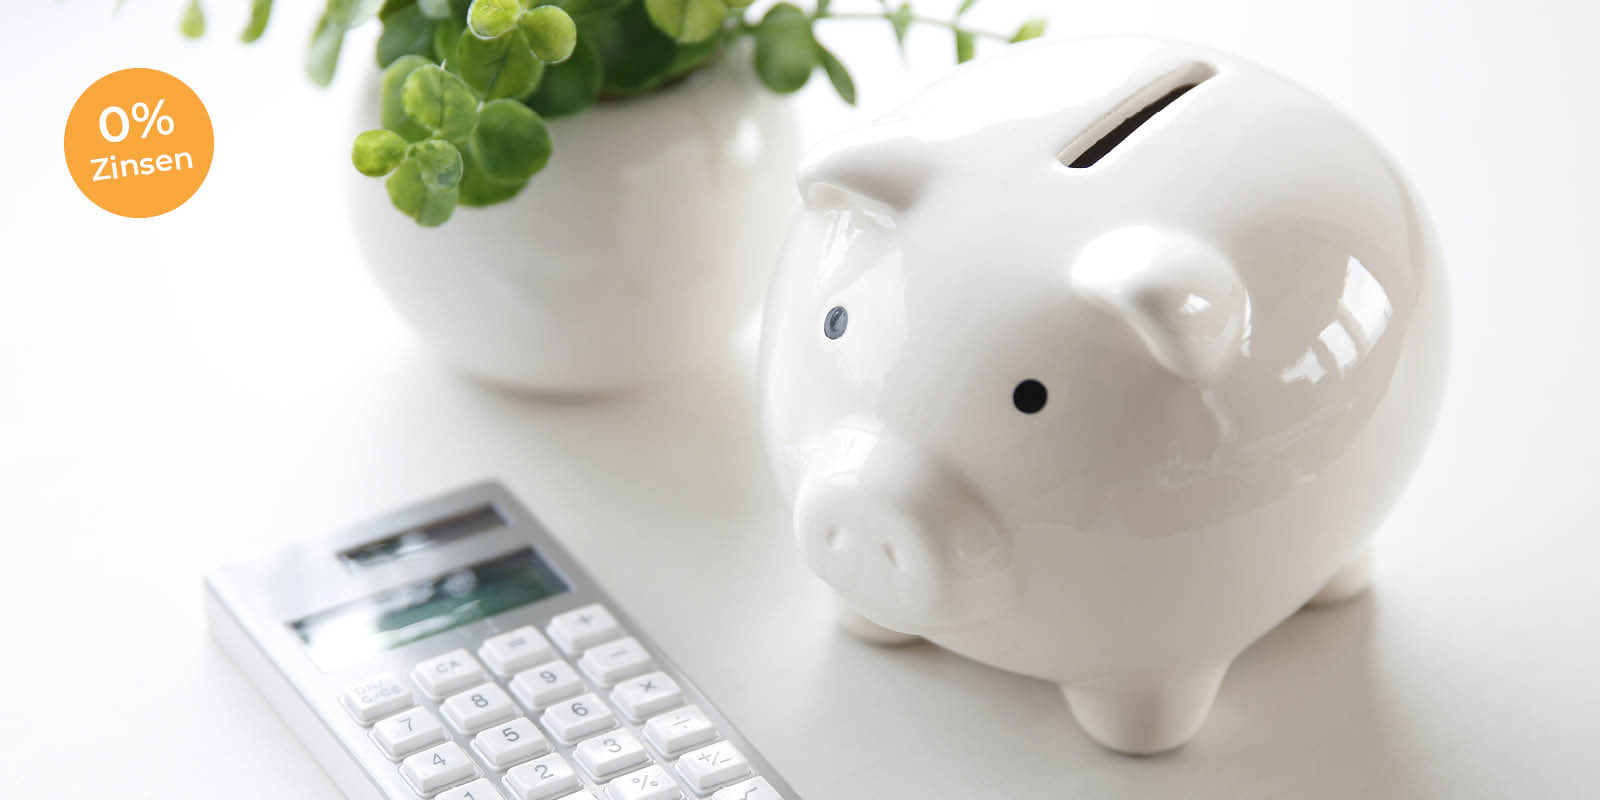 Lasermed Finanzierung: Weiße Porzellan-Schwein steht neben einer Pflanze in einem weißem Topf und einem Taschenrechner auf einem weißen Tisch